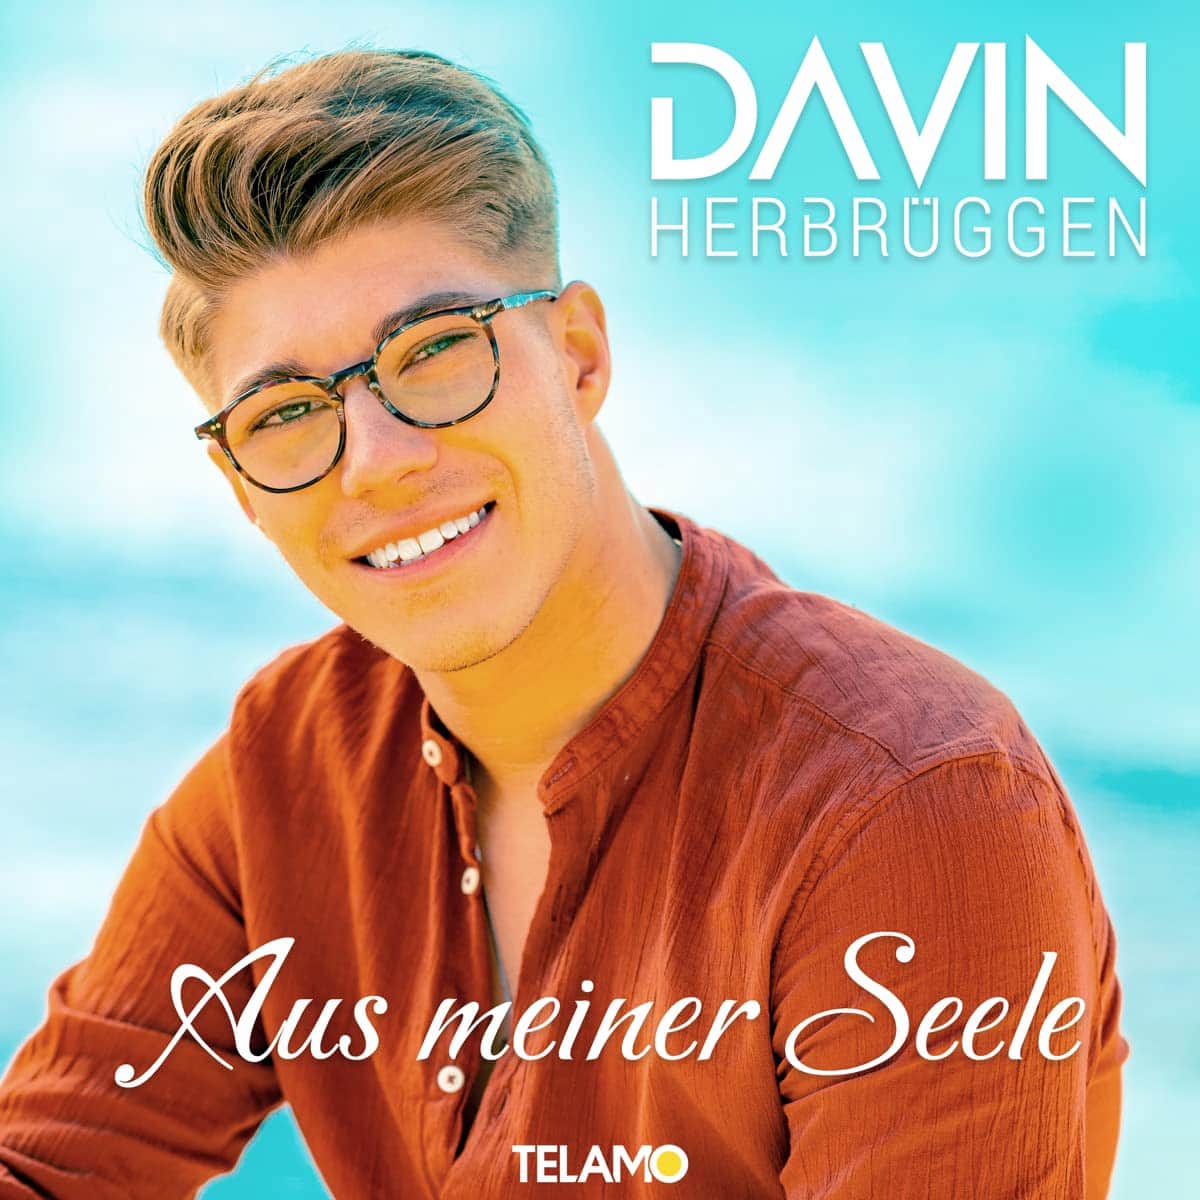 Davin Herbrüggen CD "Aus meiner Seele" 2022